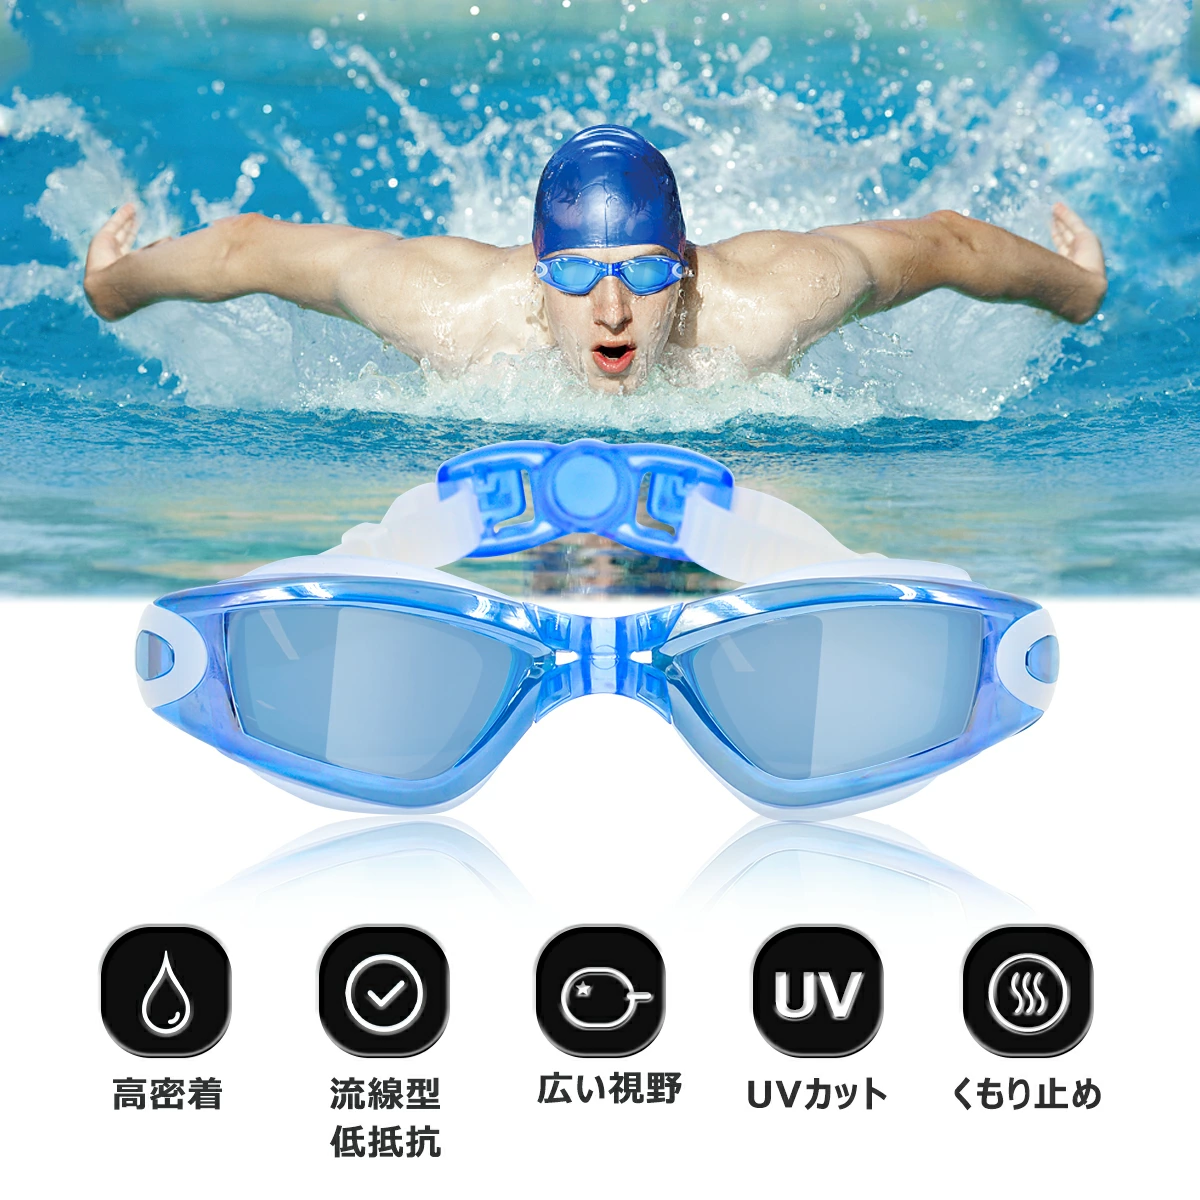 お手頃価格 スイミングゴーグル 度付き ゴーグル 医療機器認証品 水泳 くもり止め スイムゴーグル UVカット 大人 子供 広い視野 近視用  度付レンズ